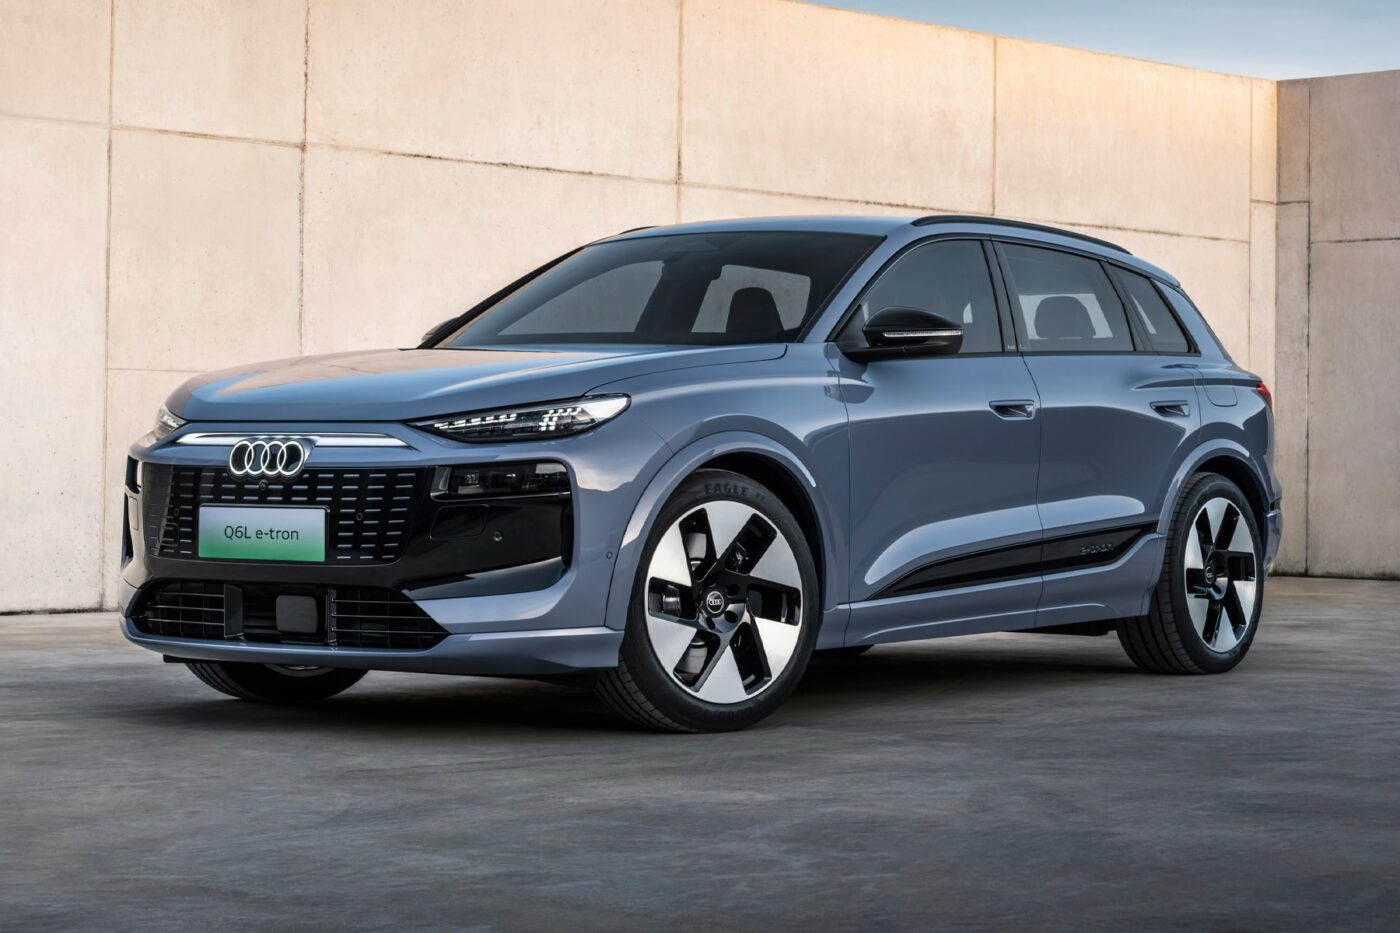 Audi-zeigt-China-Langversion-des-Q6-e-tron